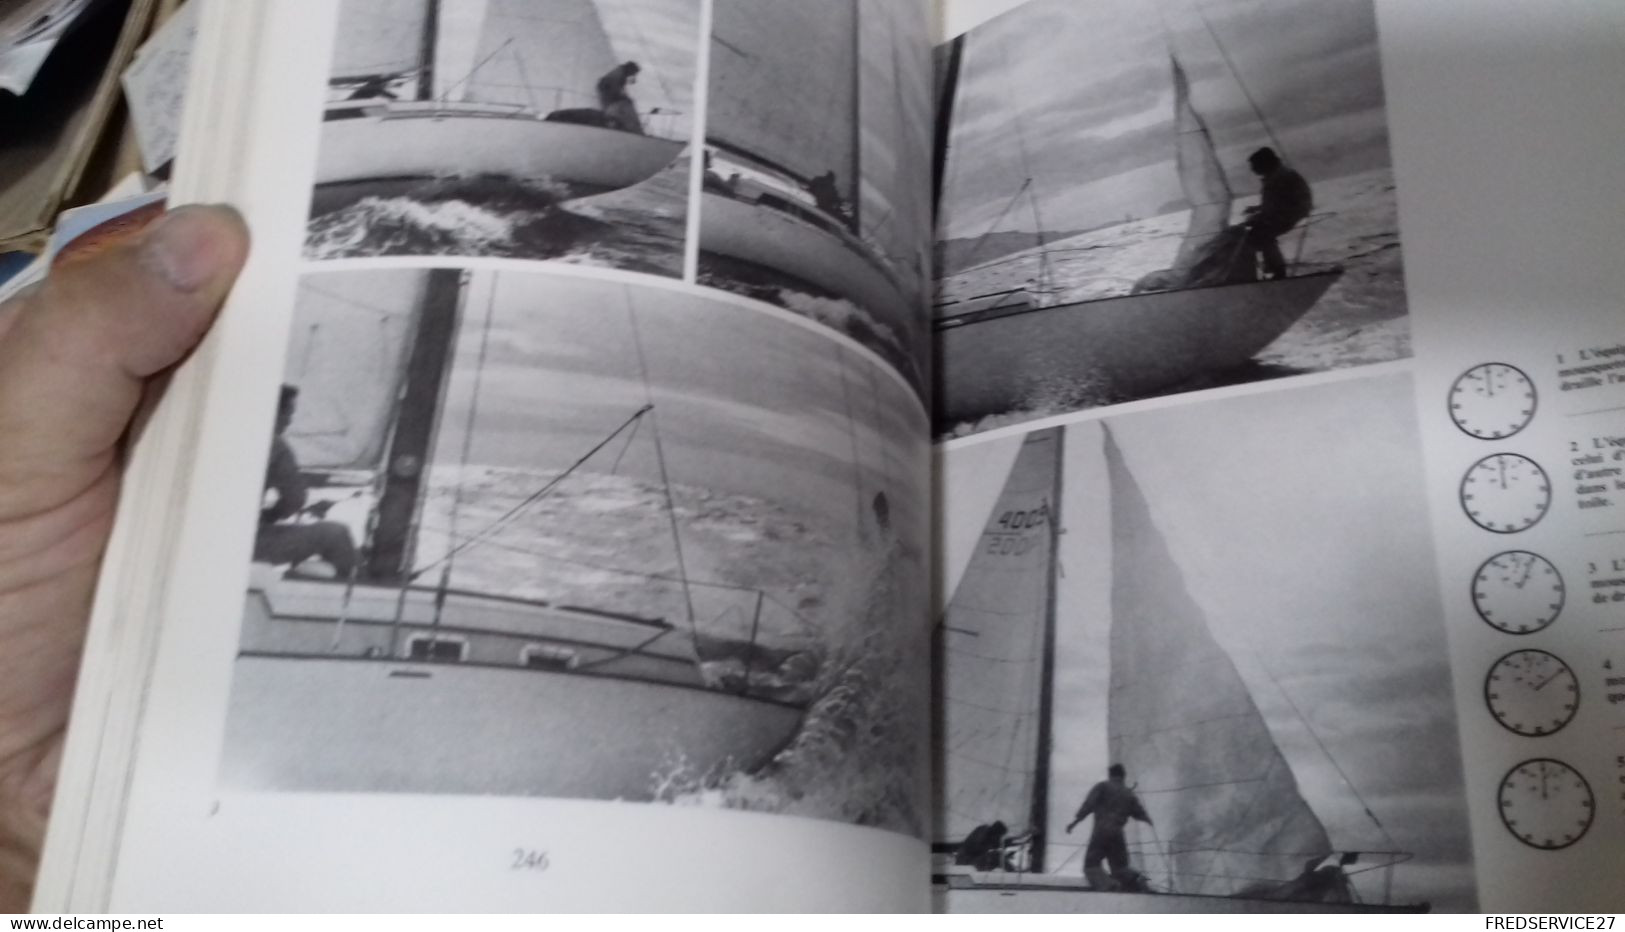 137/ AU LARGE CROISIERE ET COURSE PAR ALAIN GLIKSMAN 1974 /450 PAGES - Boats